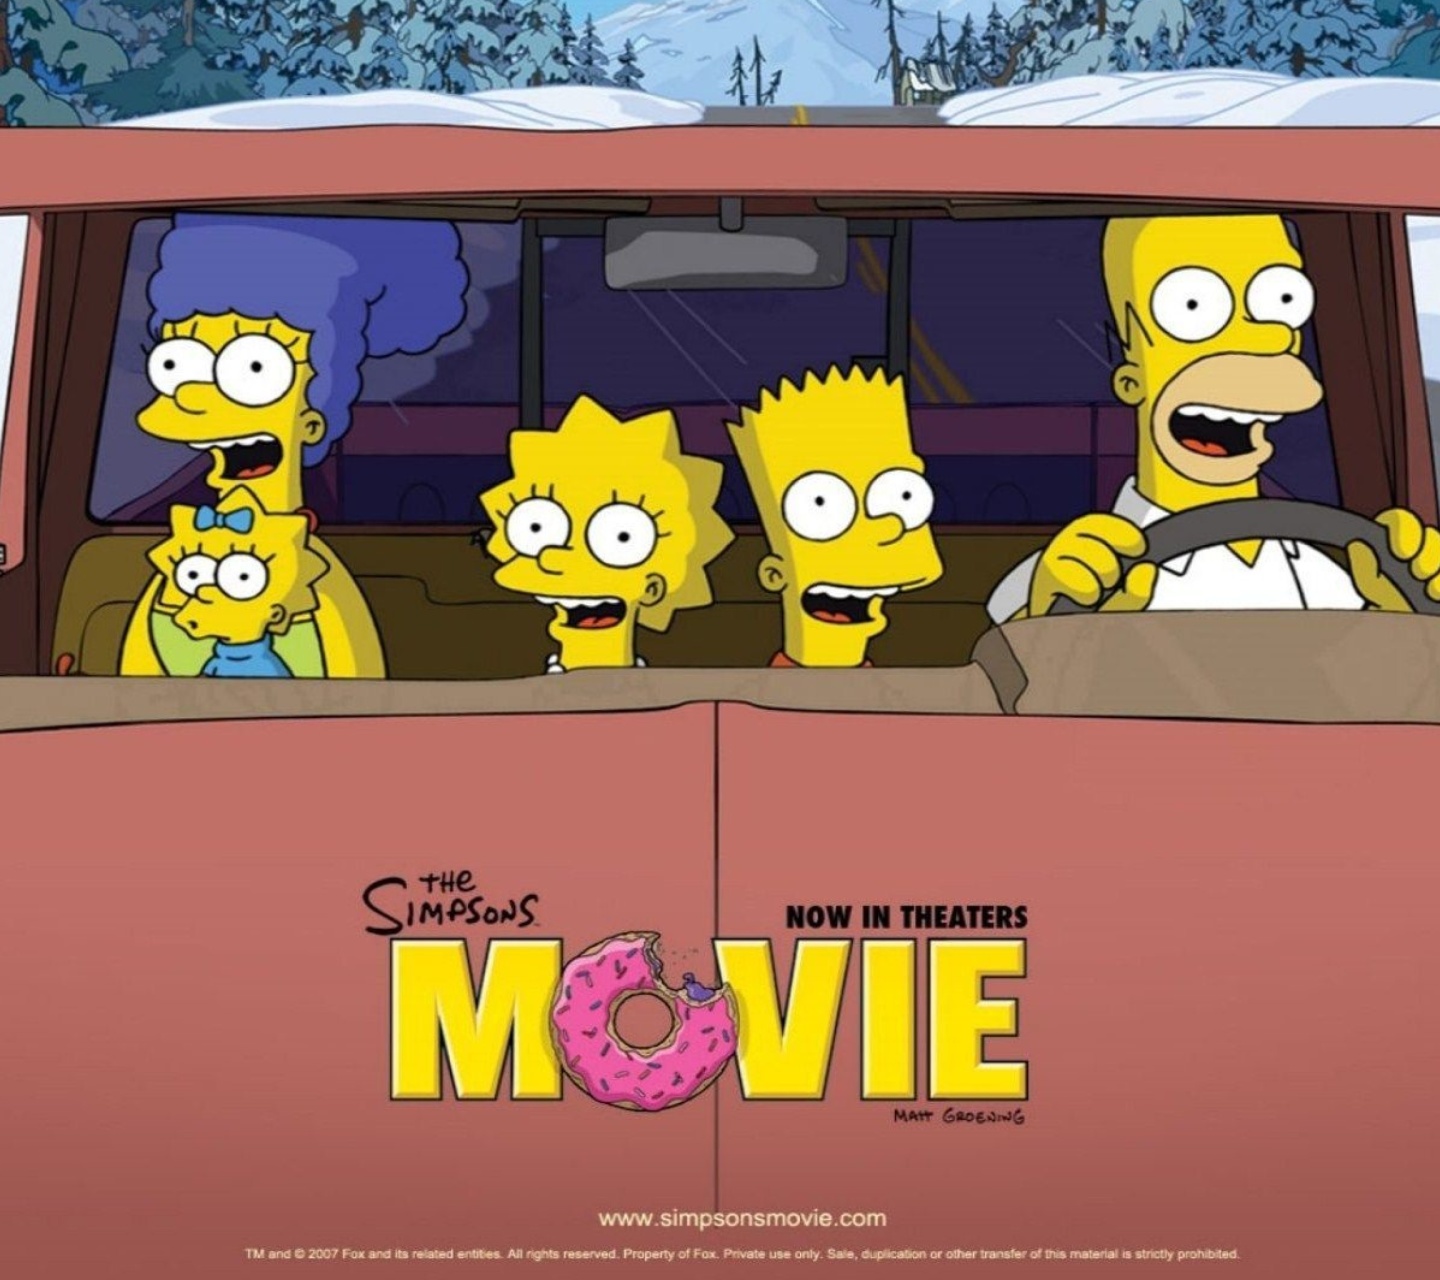 Sfondi The Simpsons Movie 1440x1280